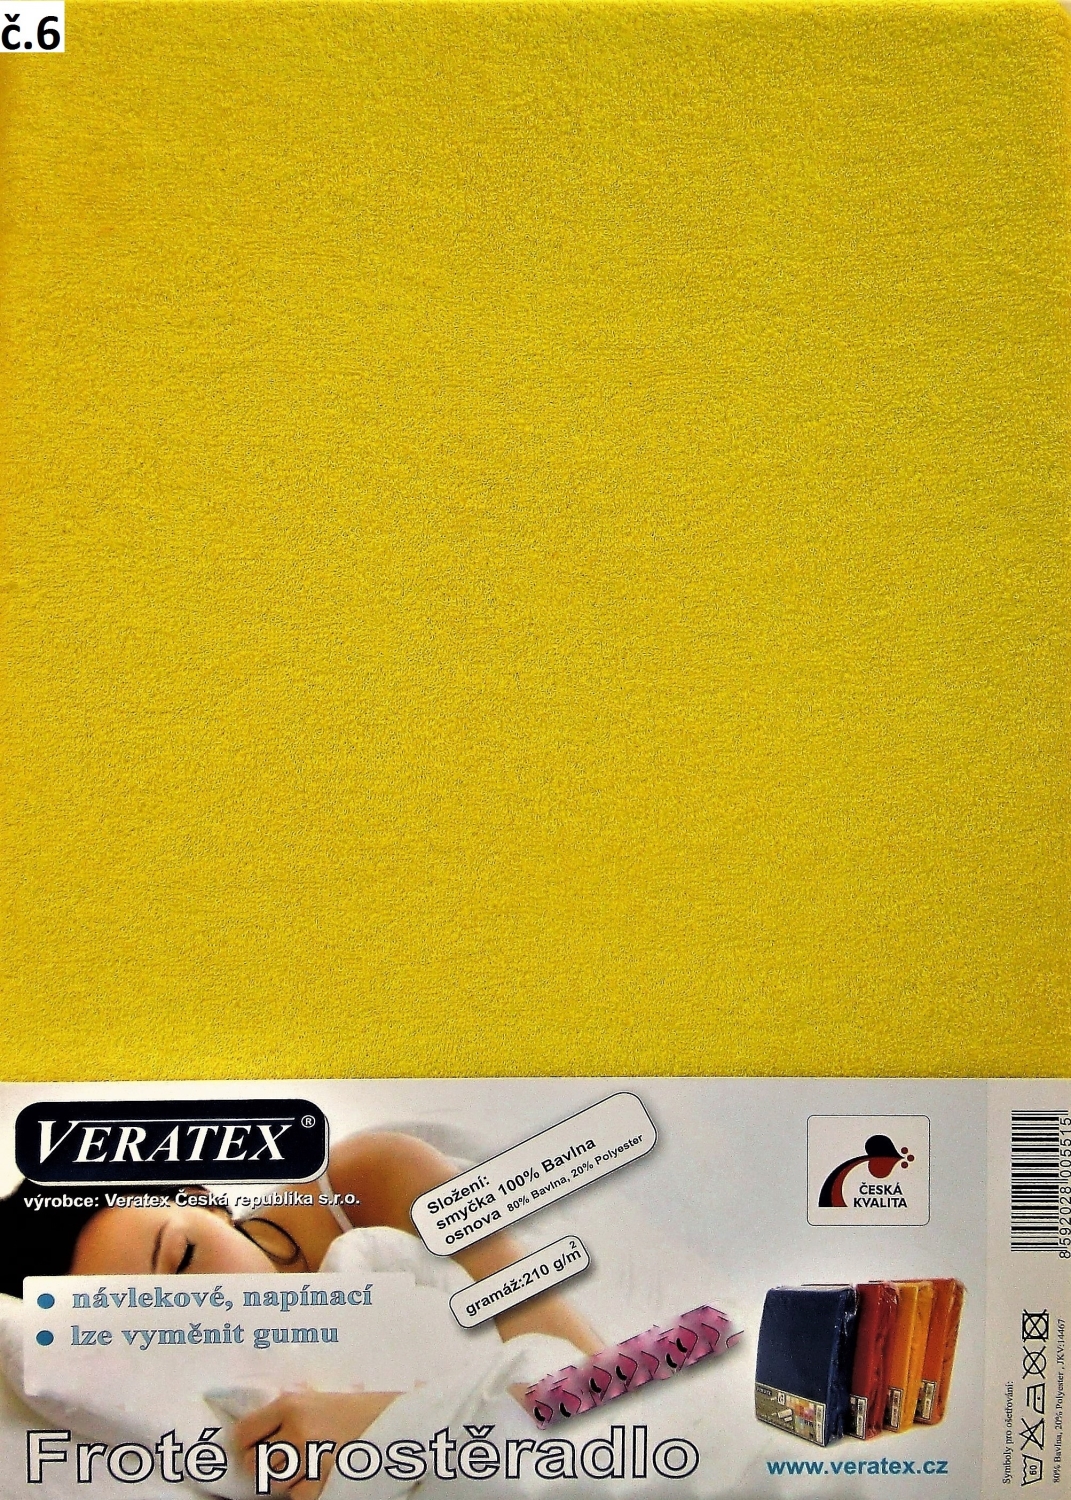 Veratex Froté prostěradlo jednolůžko 90x200/25cm (č. 6-stř.žluté)